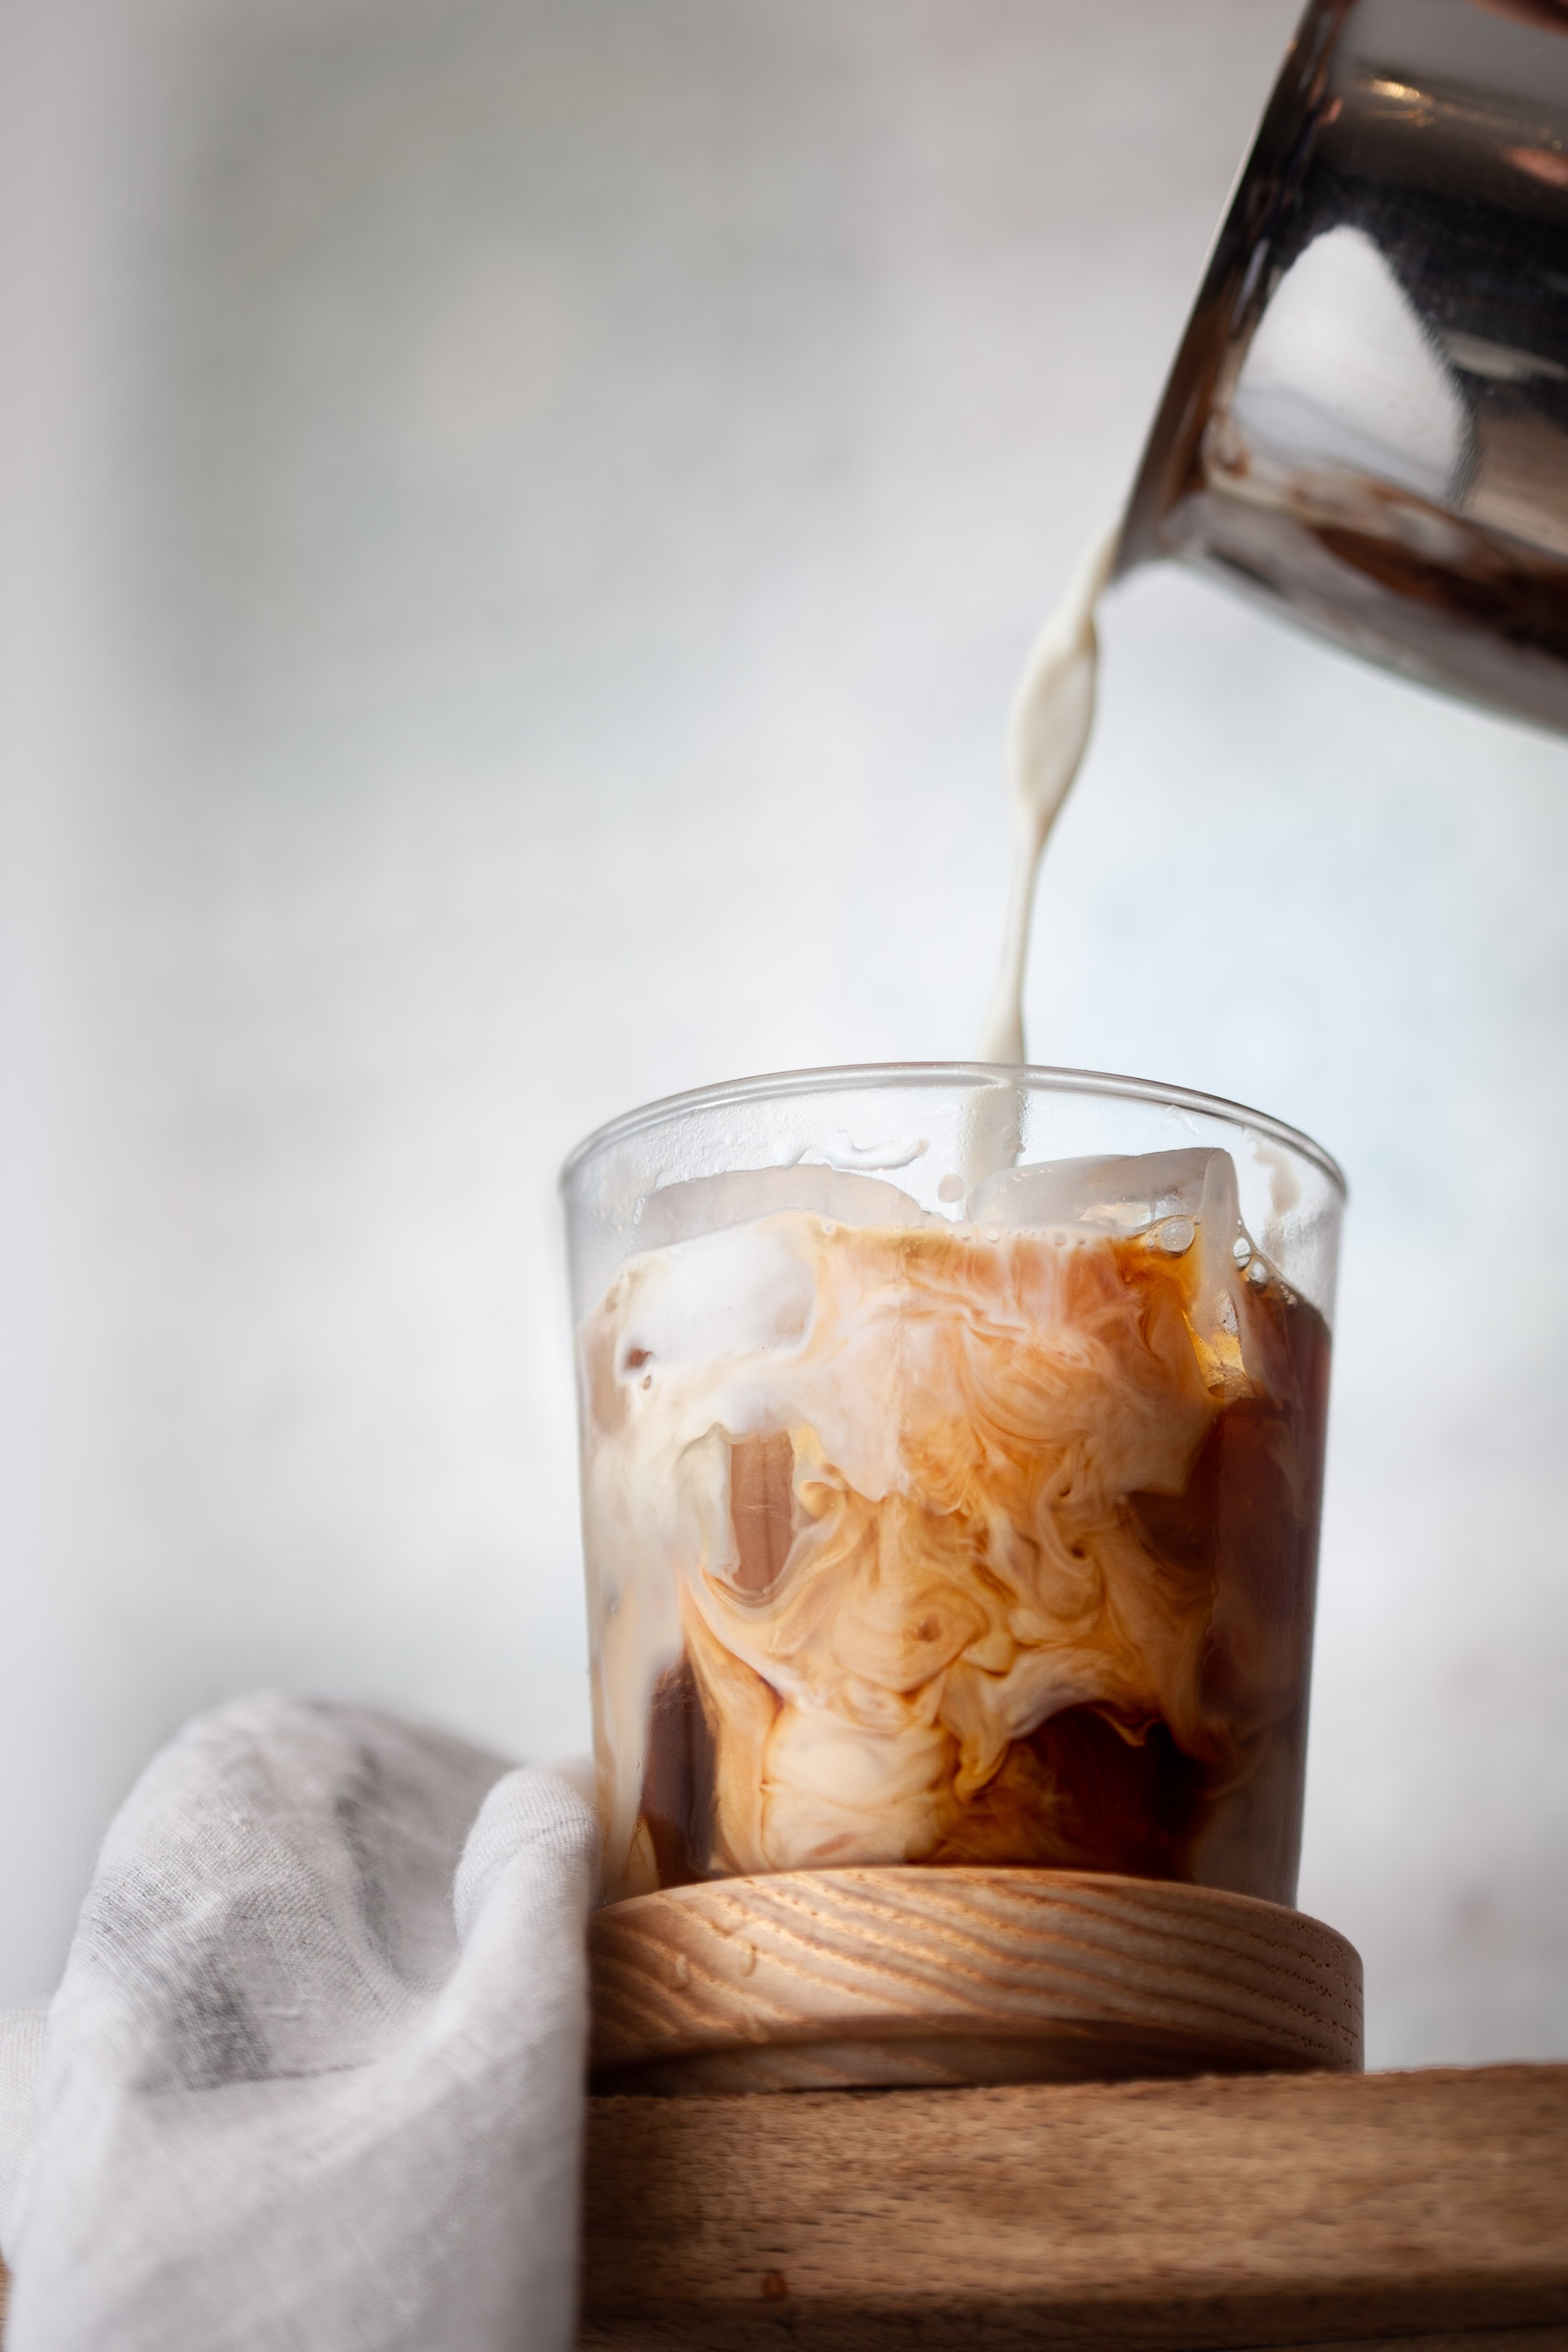 Iced Shaken Espresso - 3 Copycat Starbuck's Shaken Espresso Recipes